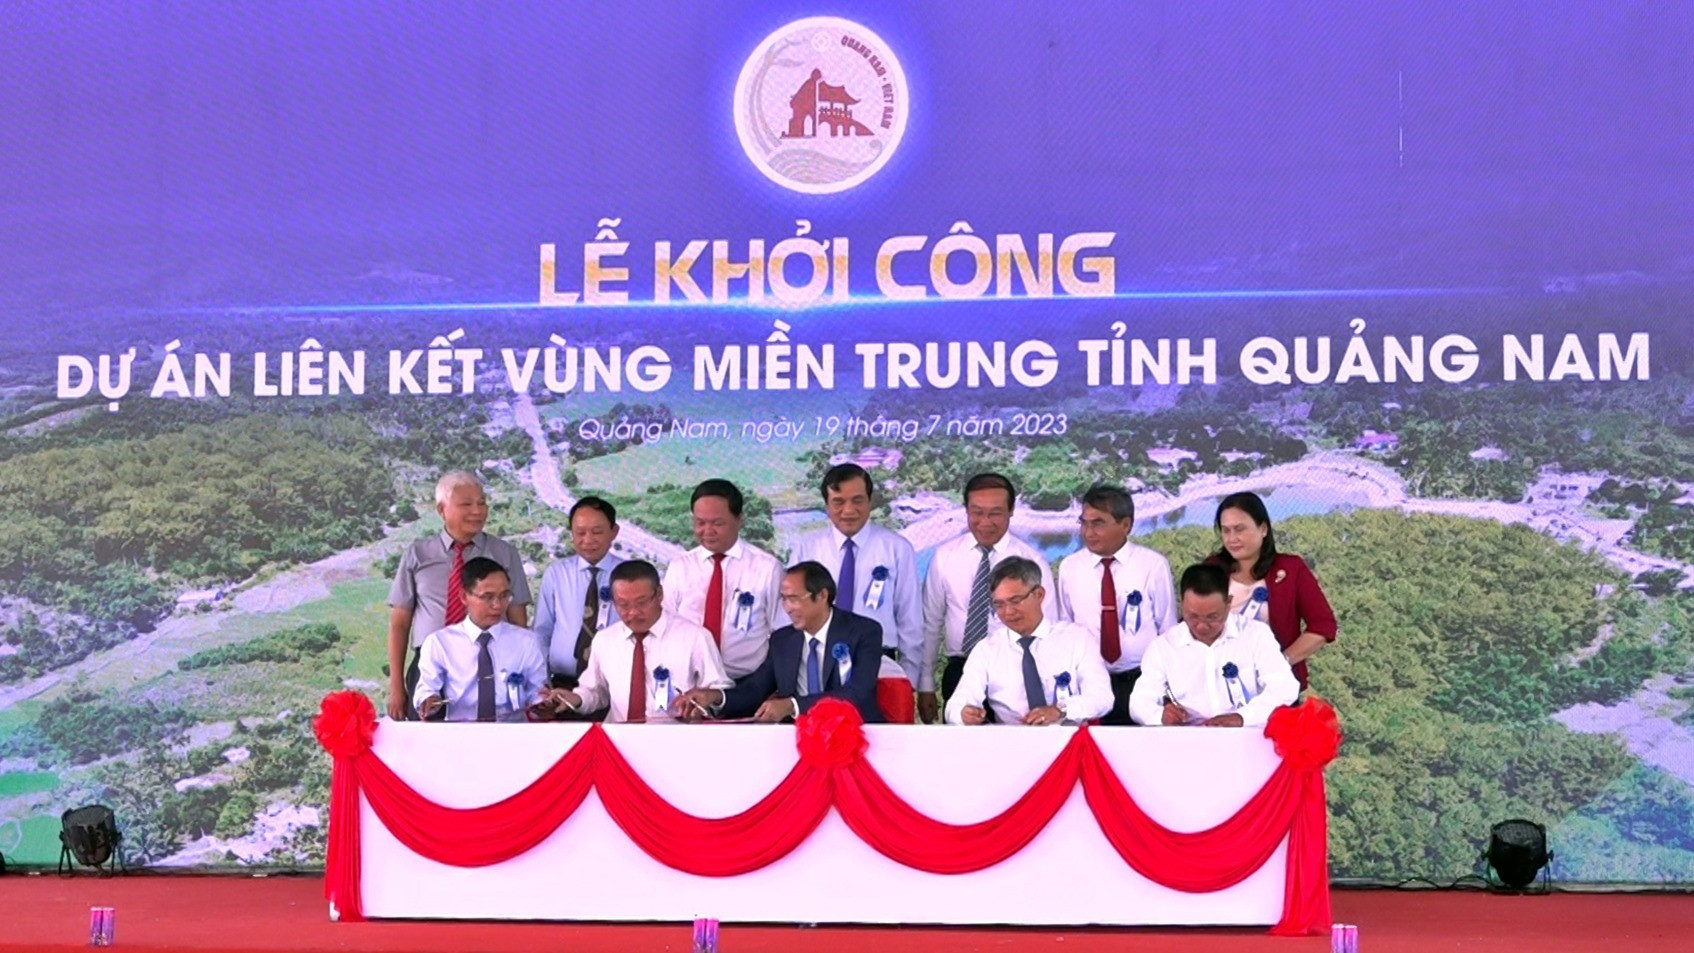 Các đơn vị ký cam kết giải phóng mặt bằng và bàn giao mặt bằng cho đơn vị thi công tại Lễ khởi công dự án Liên kết vùng miền Trung tỉnh Quảng Nam, vào ngày 19/7/2023. Ảnh: Đ.L